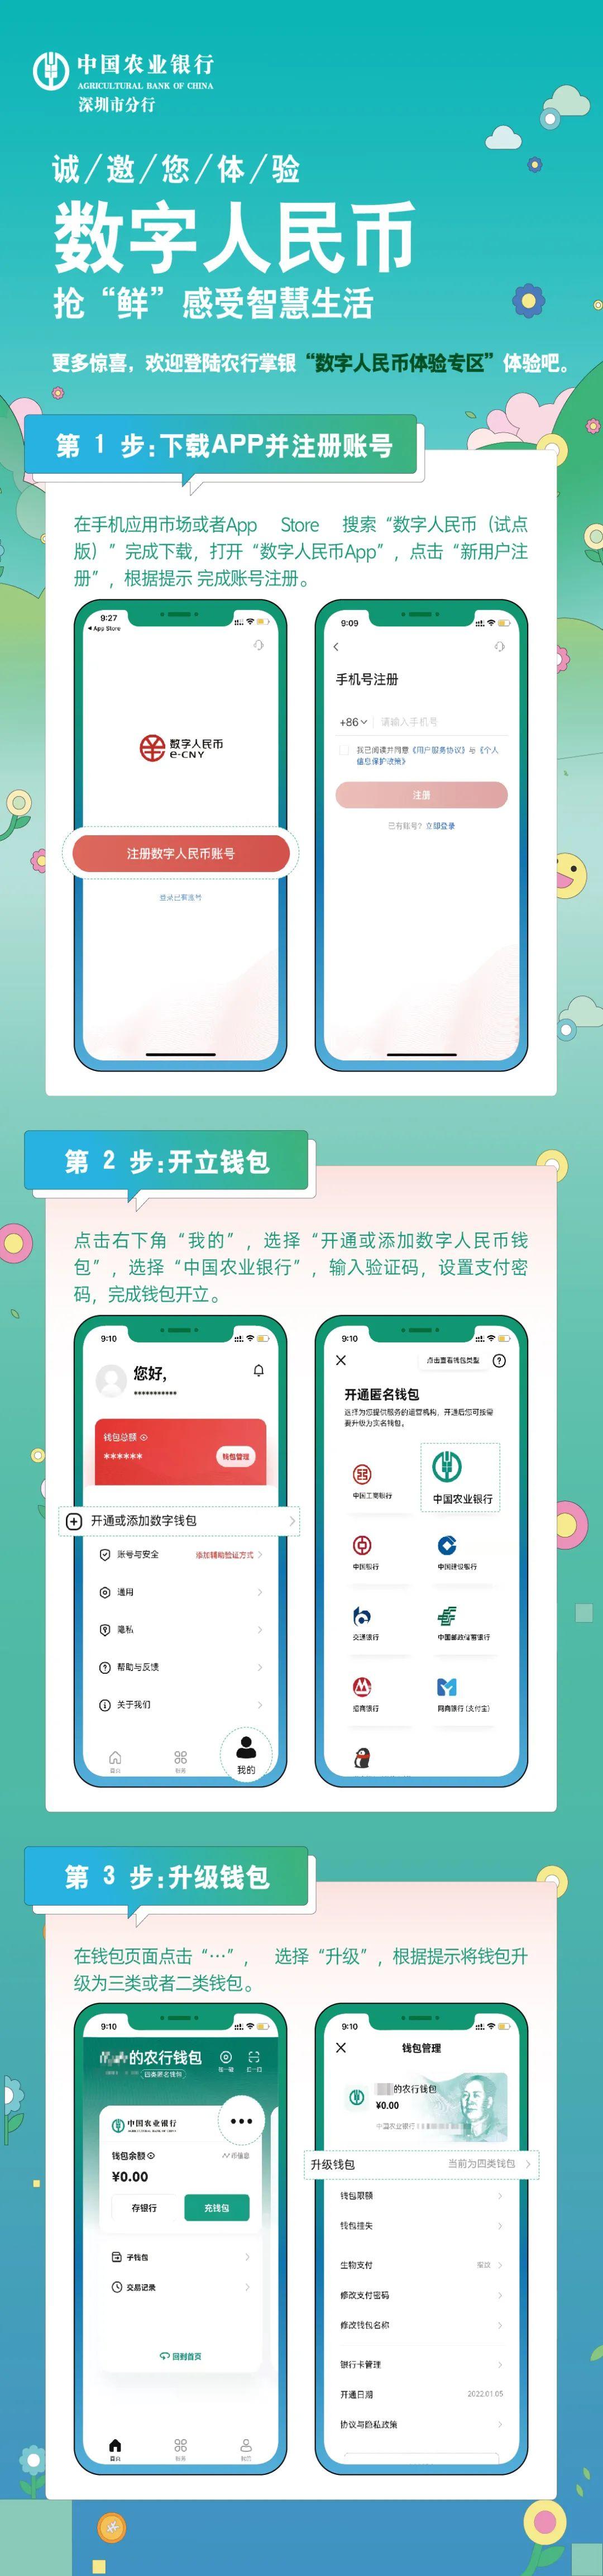 imtoken打包失败_苹果手机怎么下imtoken_imtoken在中国如何下载